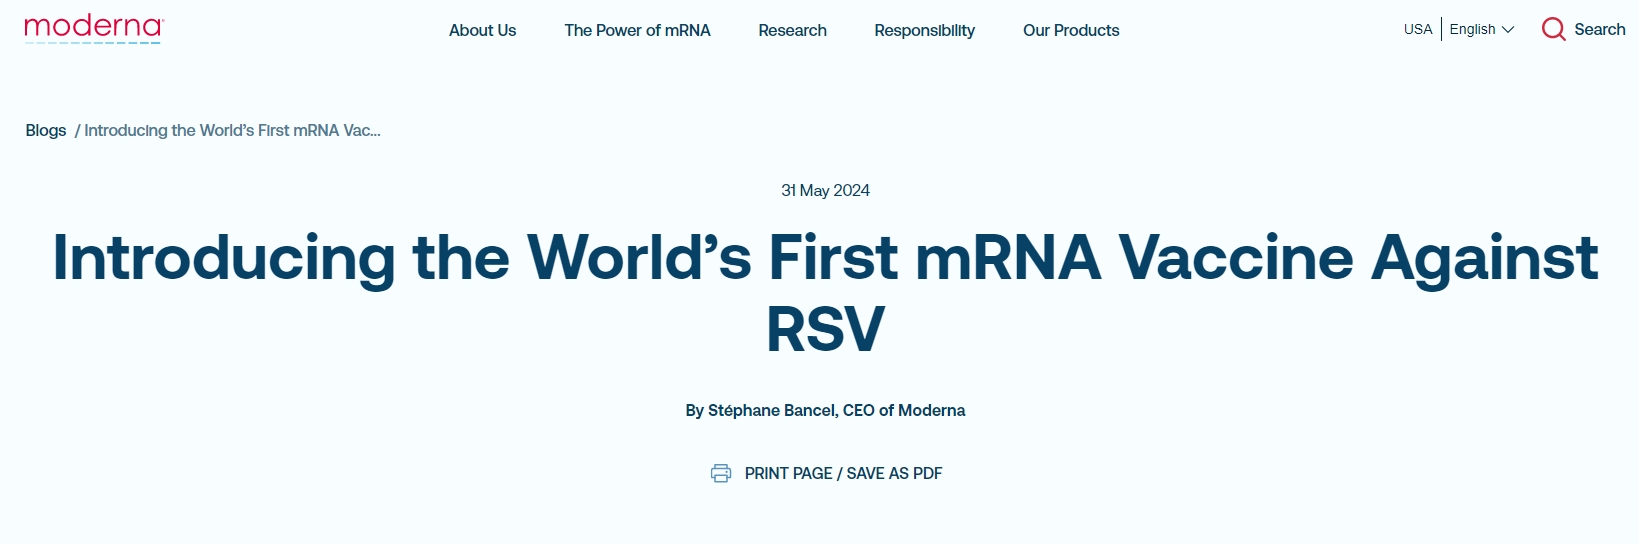 第二款拳头产品来了 美FDA批准莫德纳RSV疫苗